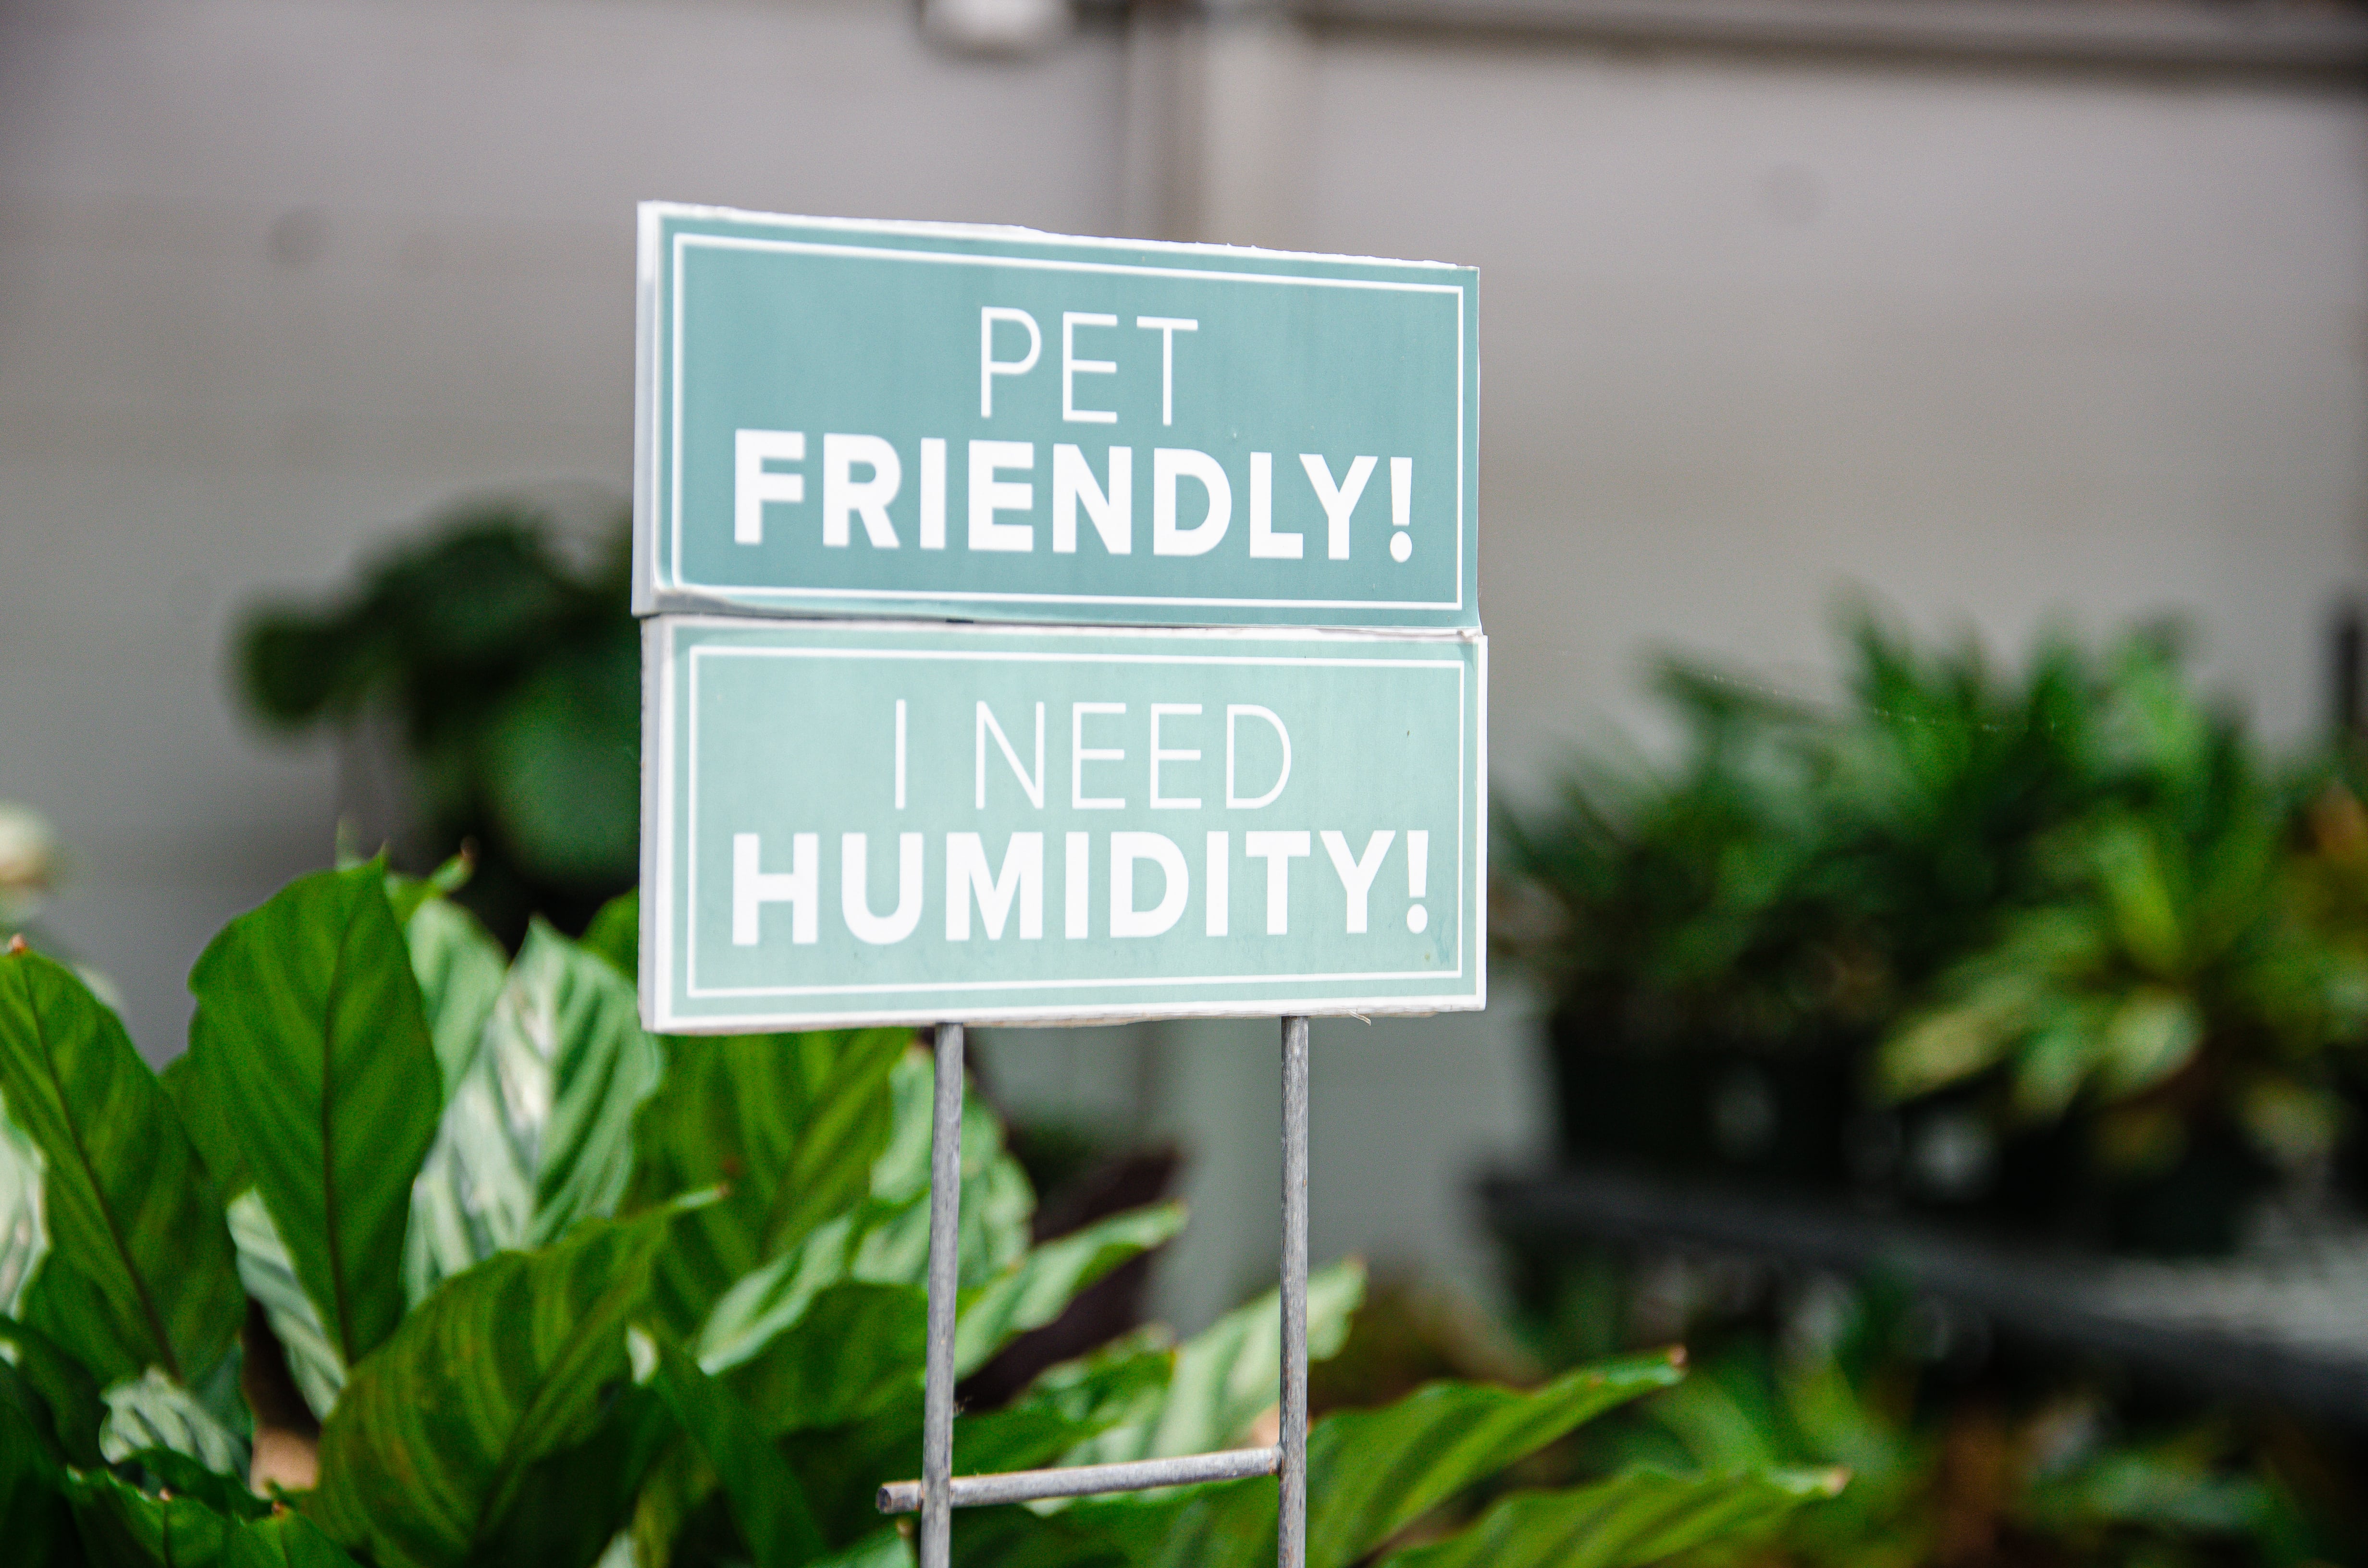 Some houseplants need humidity.